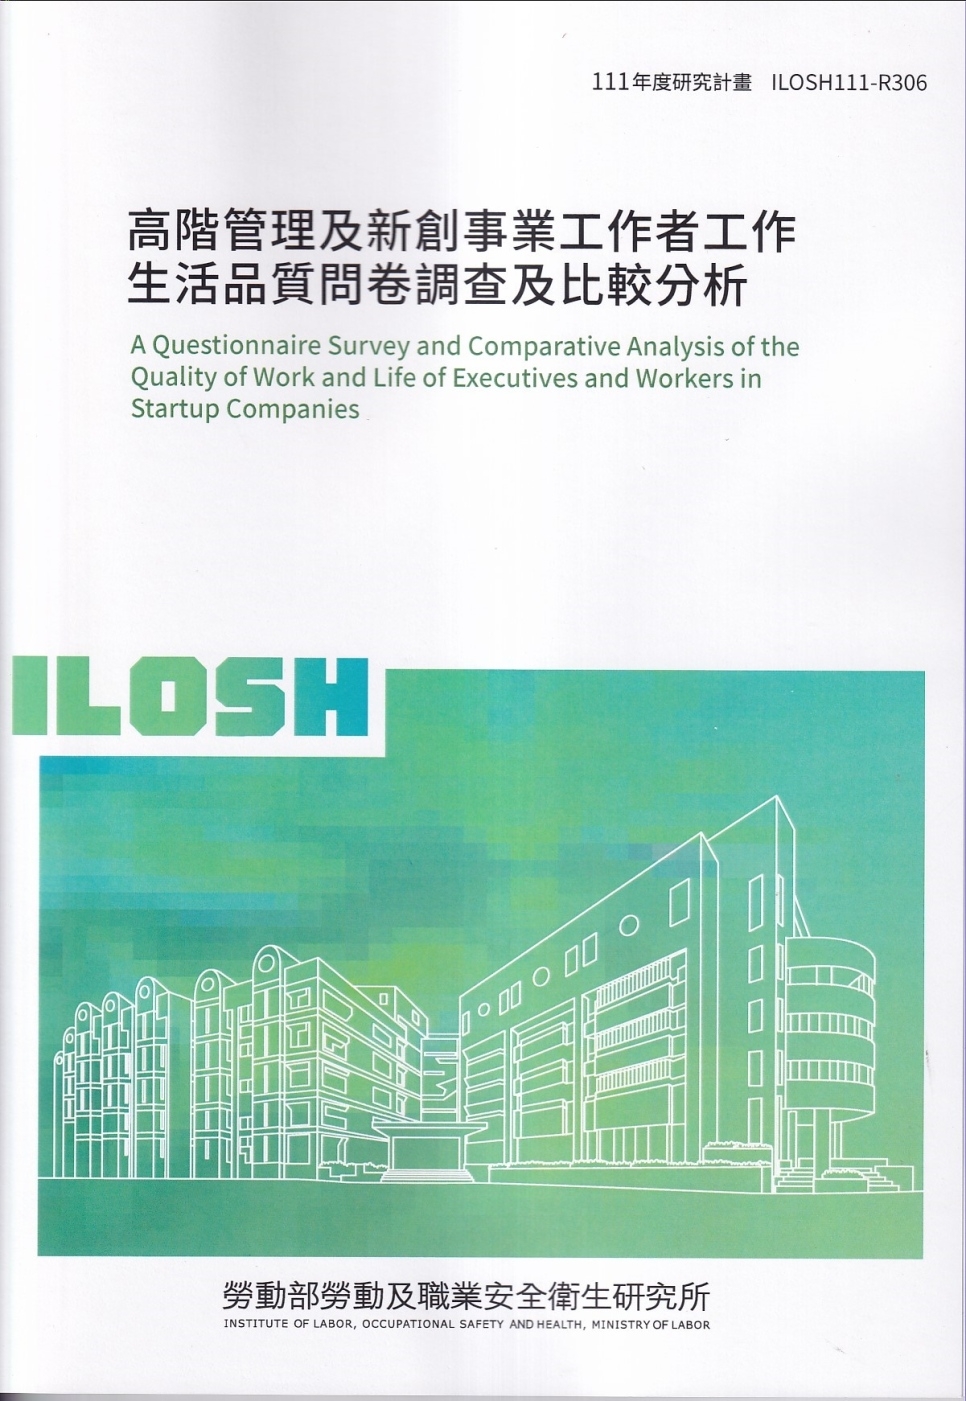 高階管理及新創事業工作者工作生活品質問卷調查及比較分析ILOSH111-R306